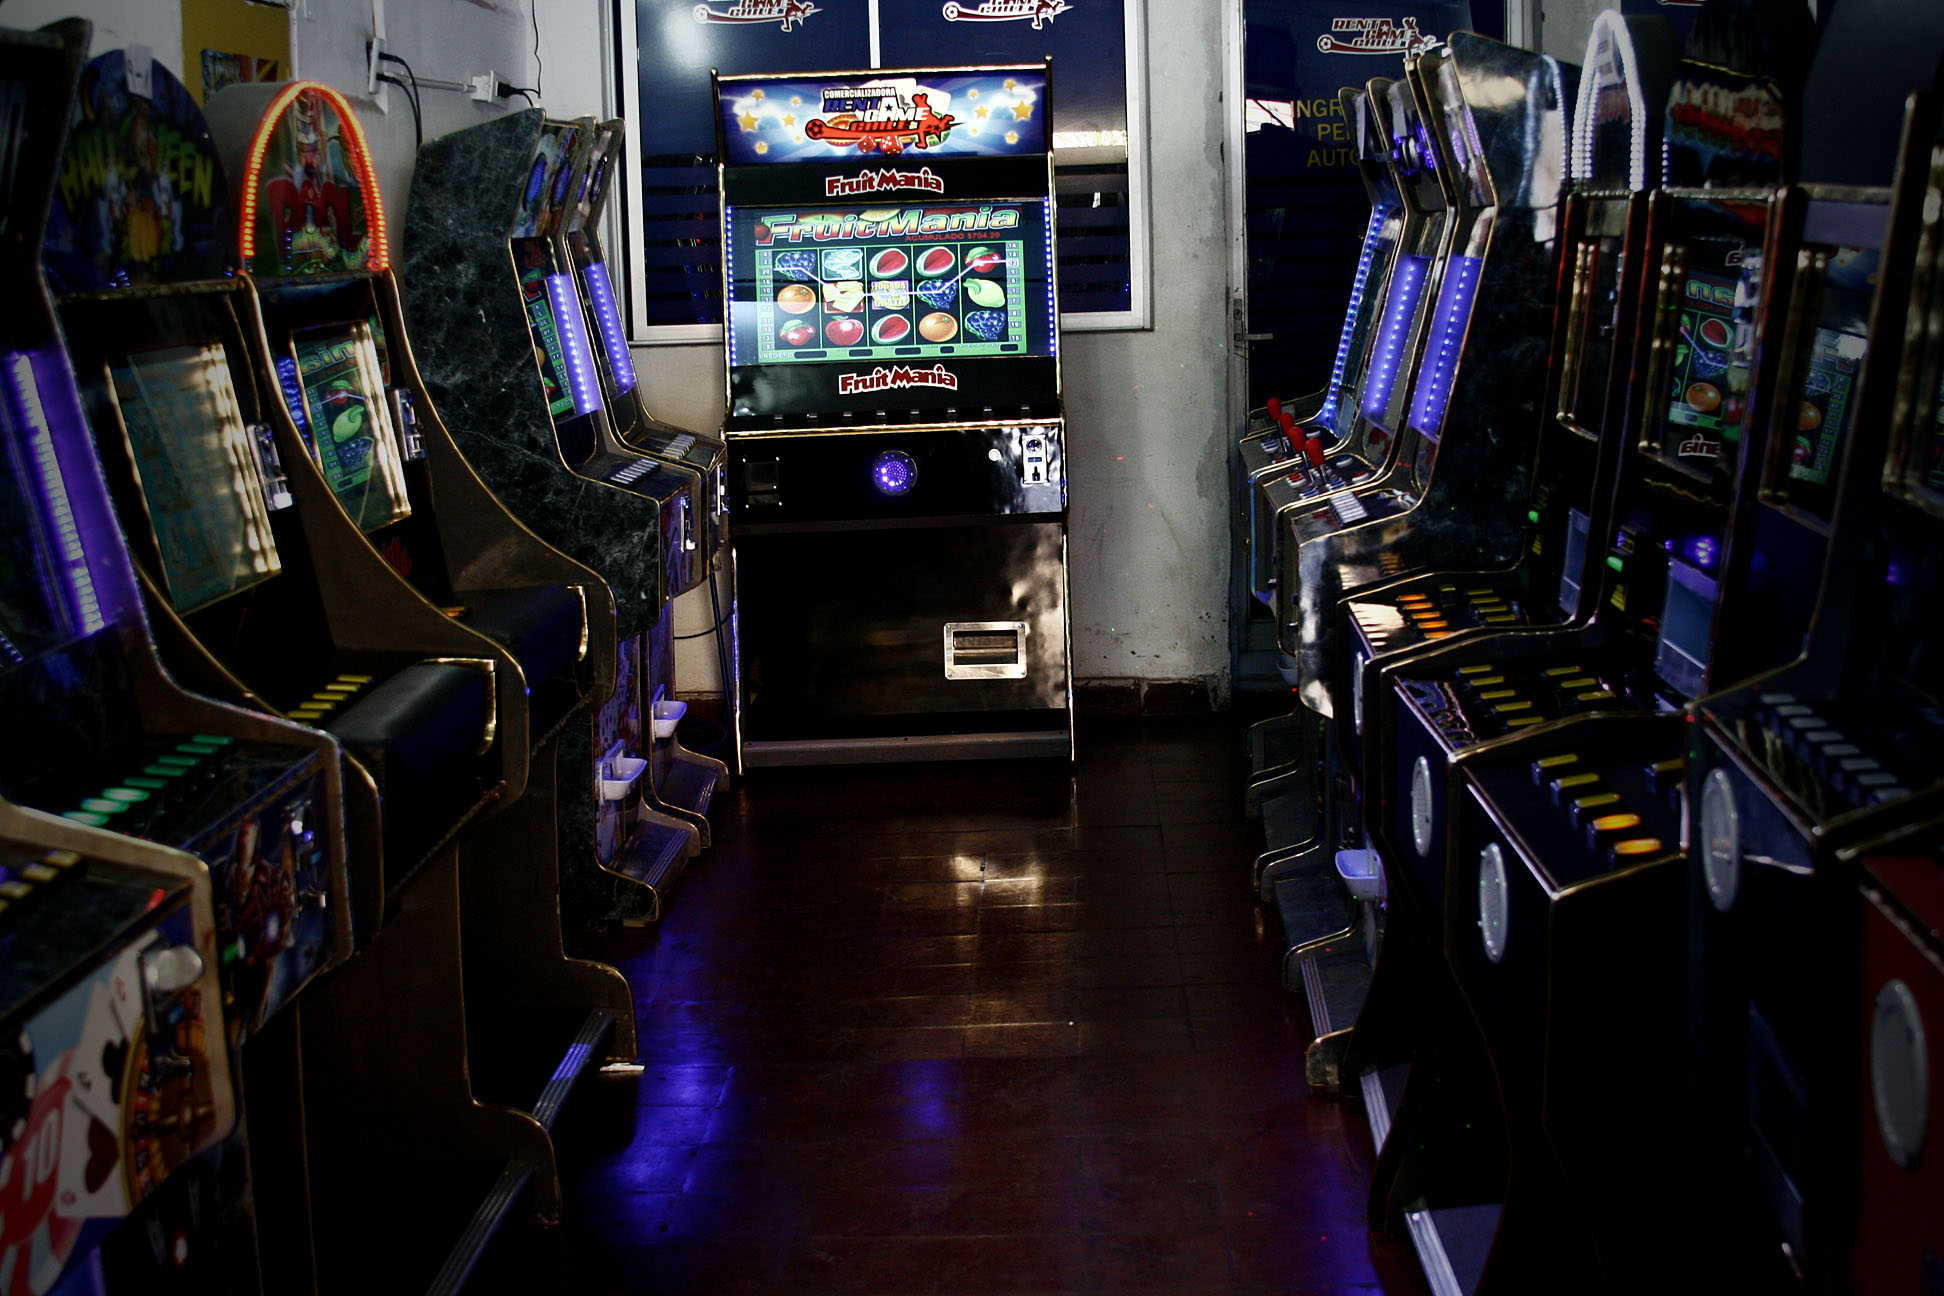 Municipalidades no podrán renovar patentes a locales con máquinas de juegos ilegales